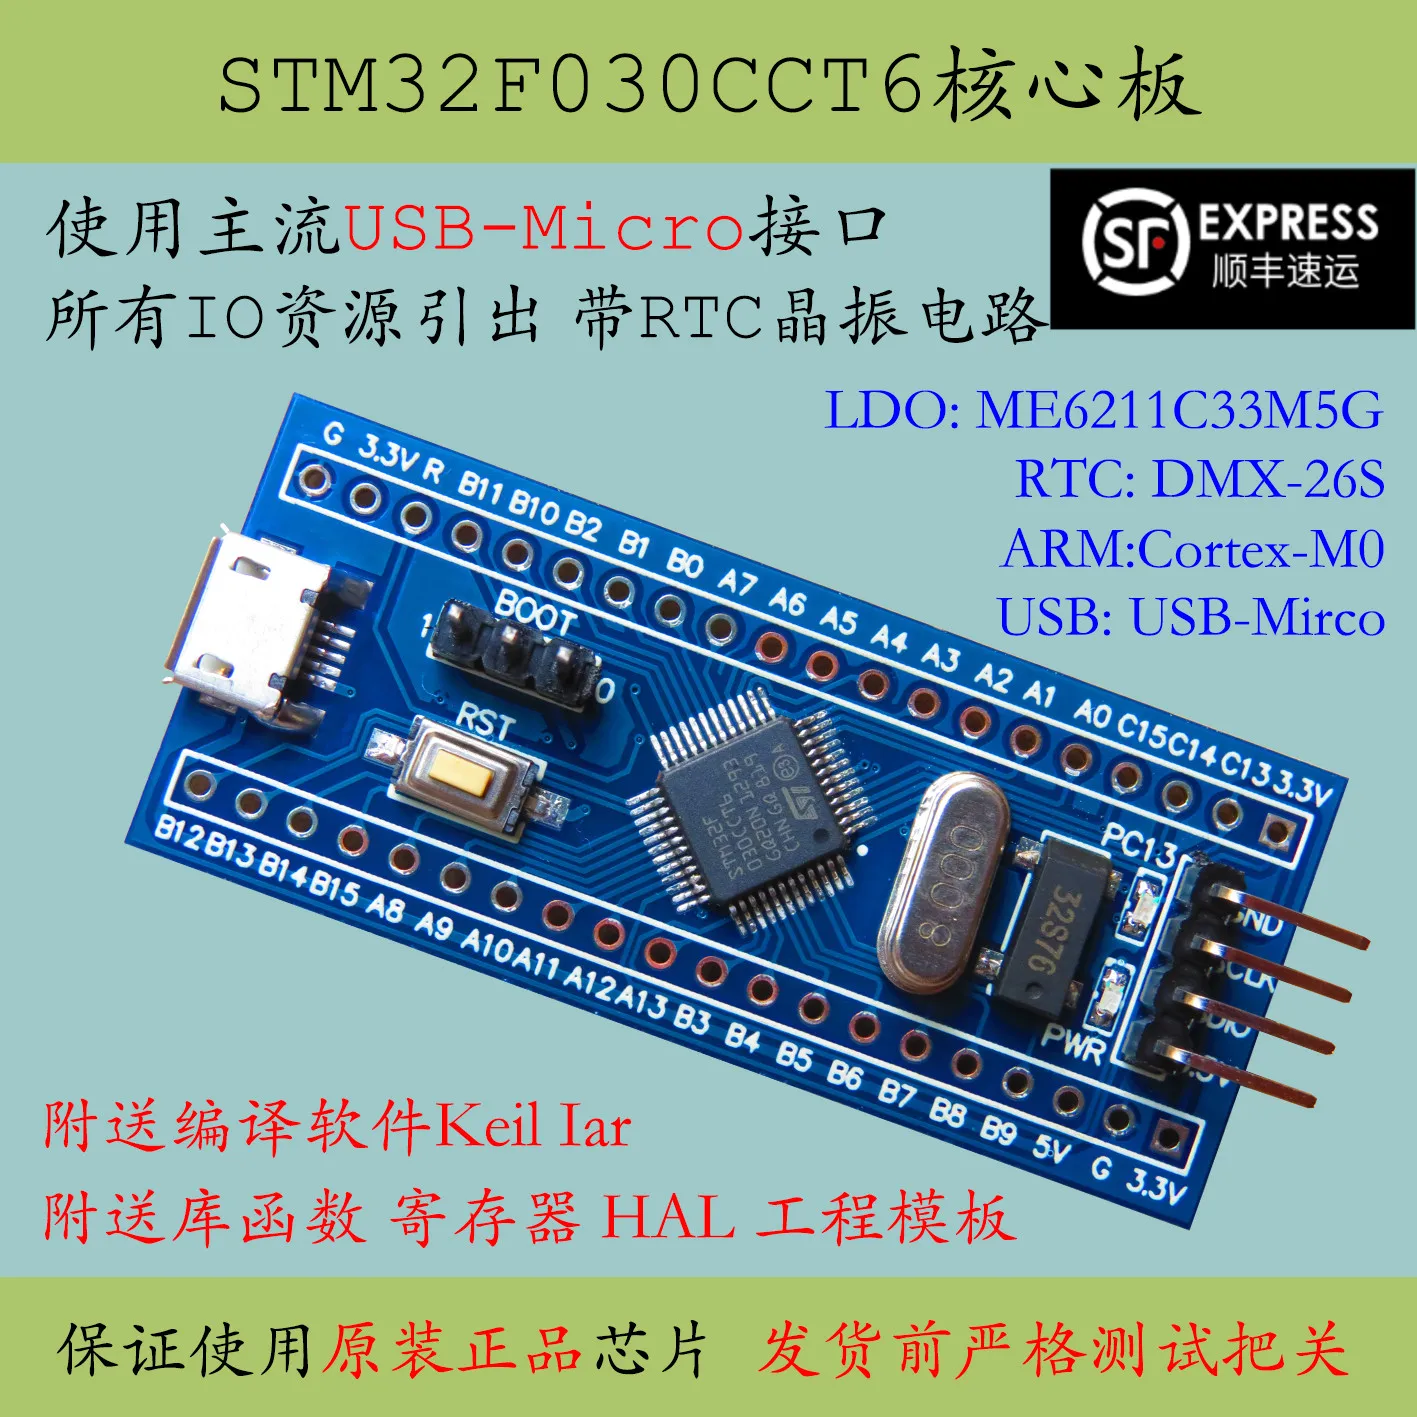 Фото Основная пластина STM32F030CCT6 массовый продукт одночиповый микрокомпьютер STM32F030